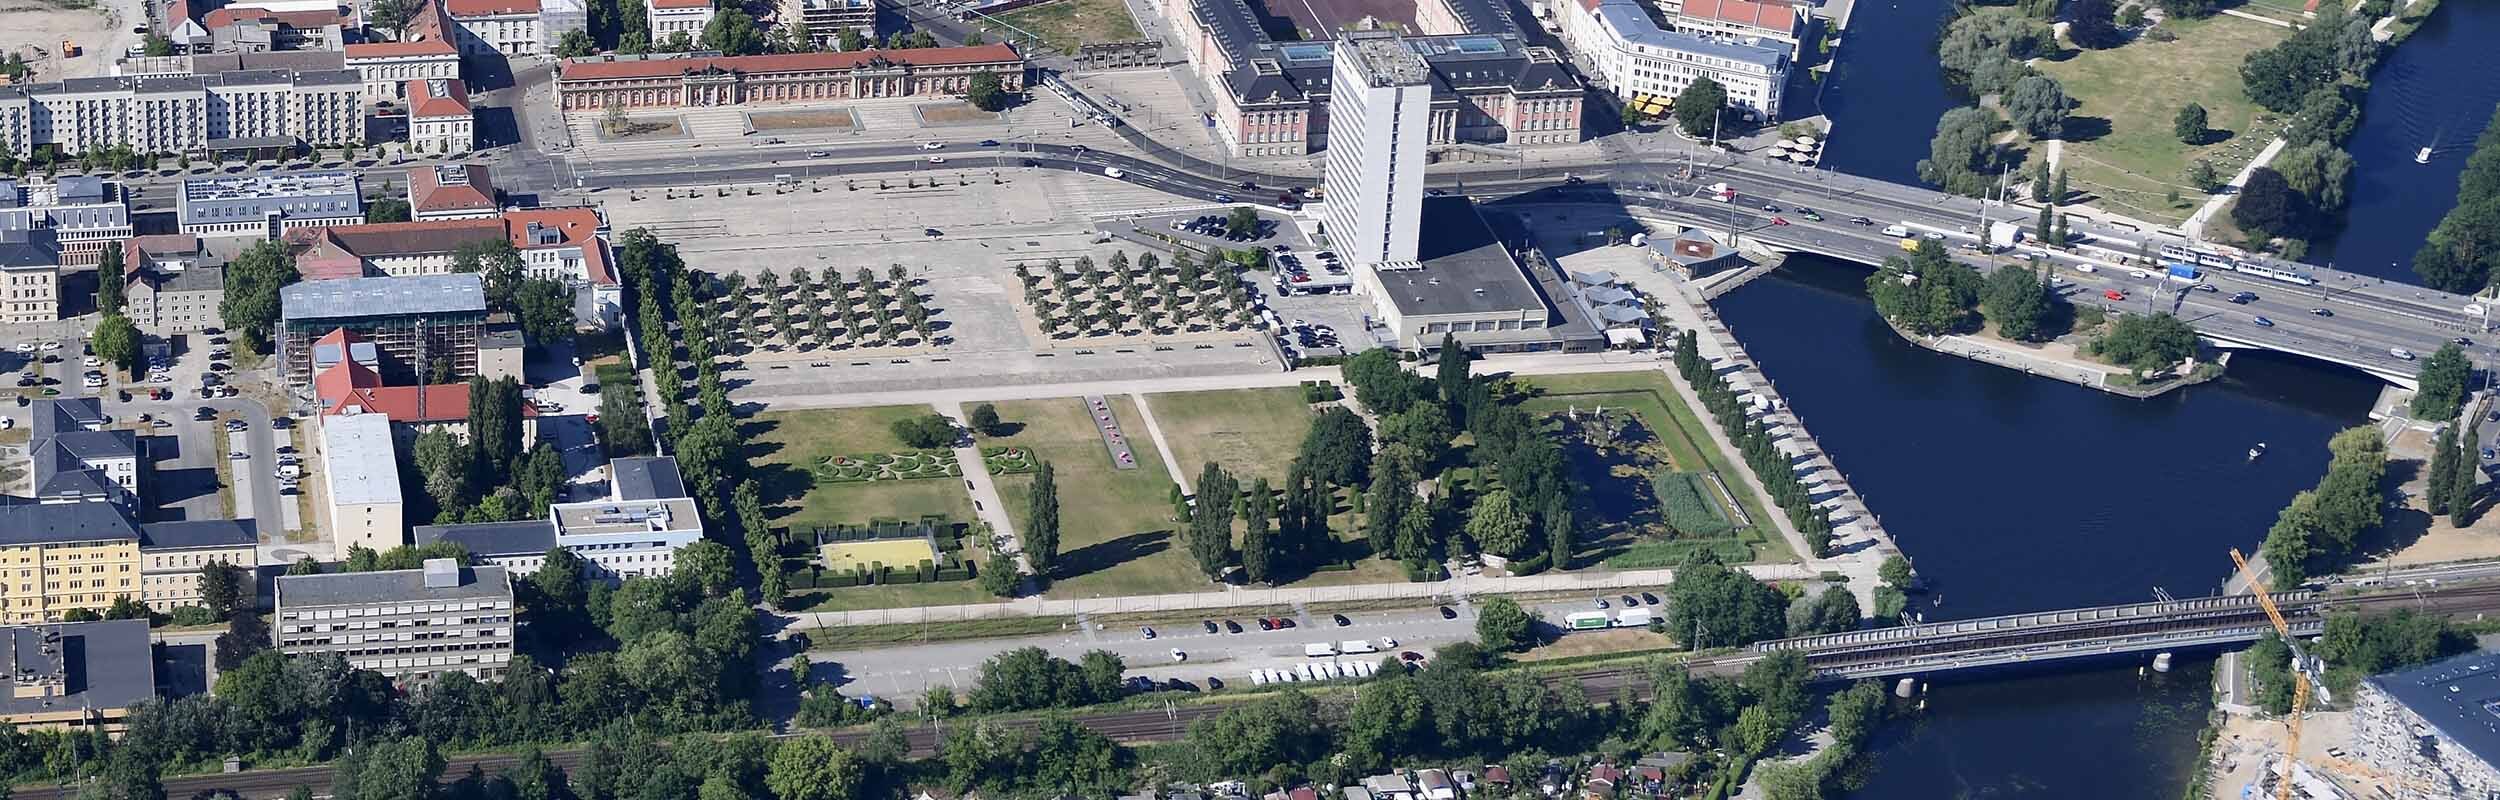 Foto: Luftbild des begrünten Lustgartens mit Neptunbassin im Osten und großzügigem Stadtplatz im Norden. Des Weiteren zusehen sind die Lange Brücke, der Landtag, das Mercure Hotel, sowie das Filmmuseum.